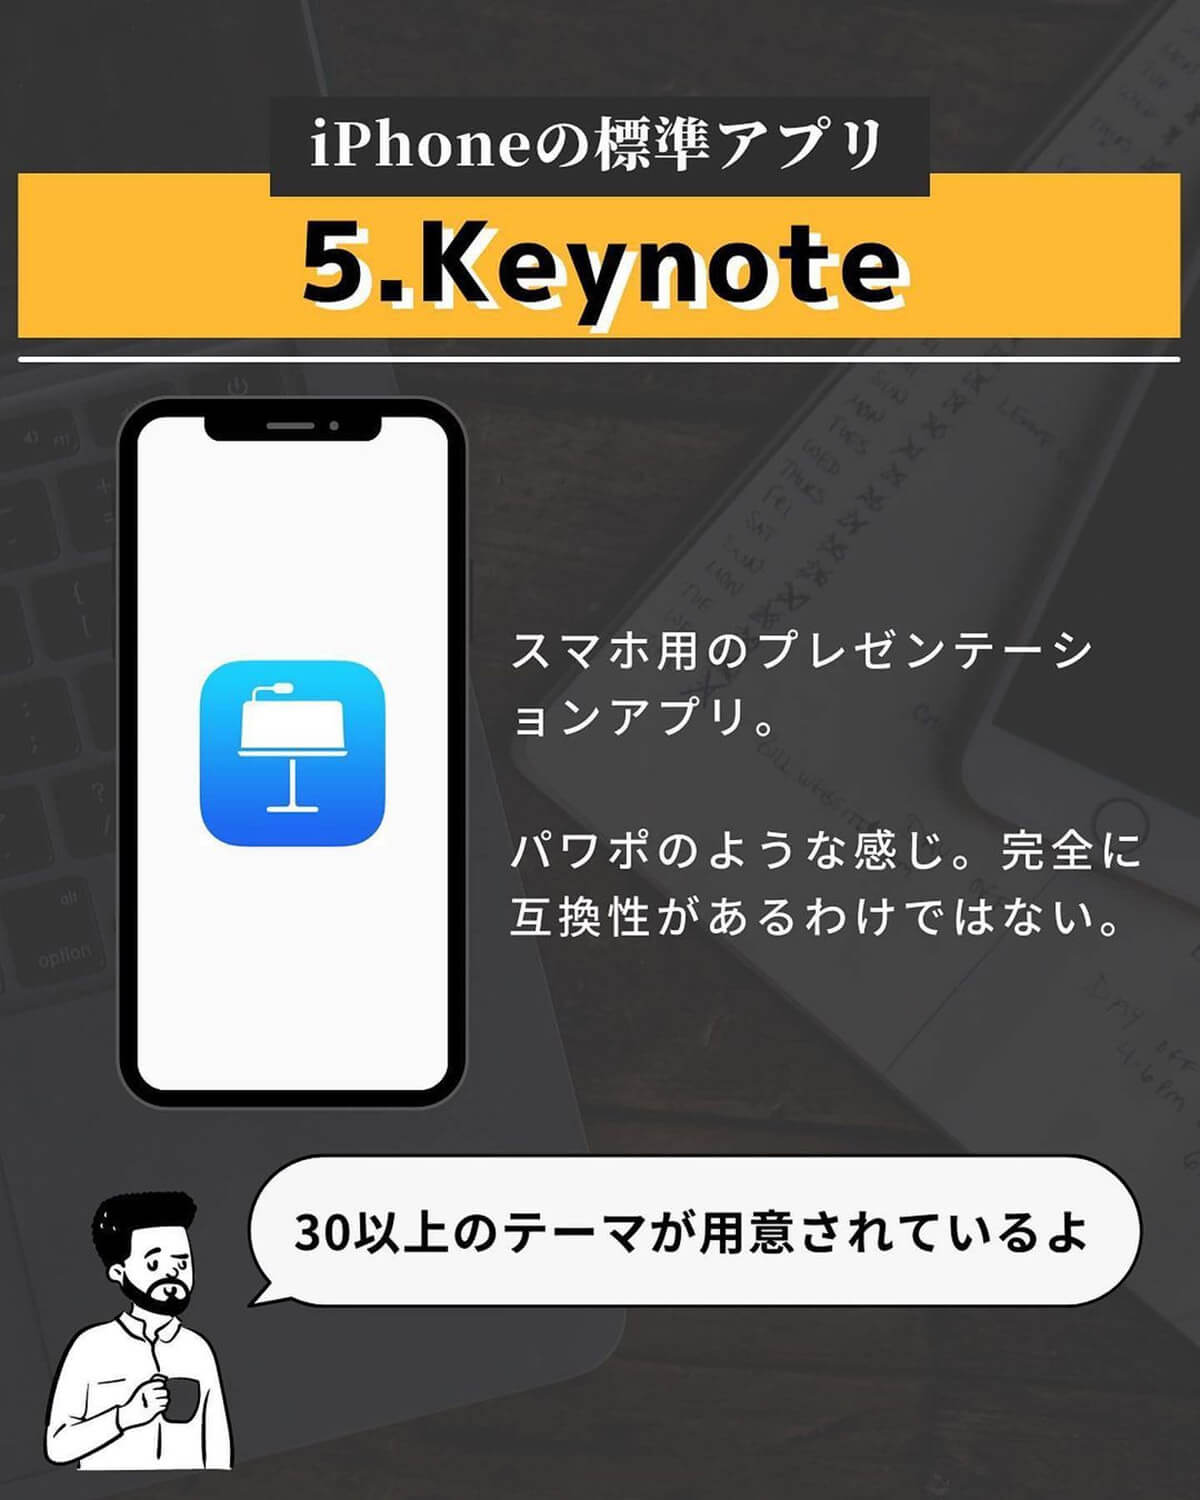 iPhoneの標準アプリ「Keynote」